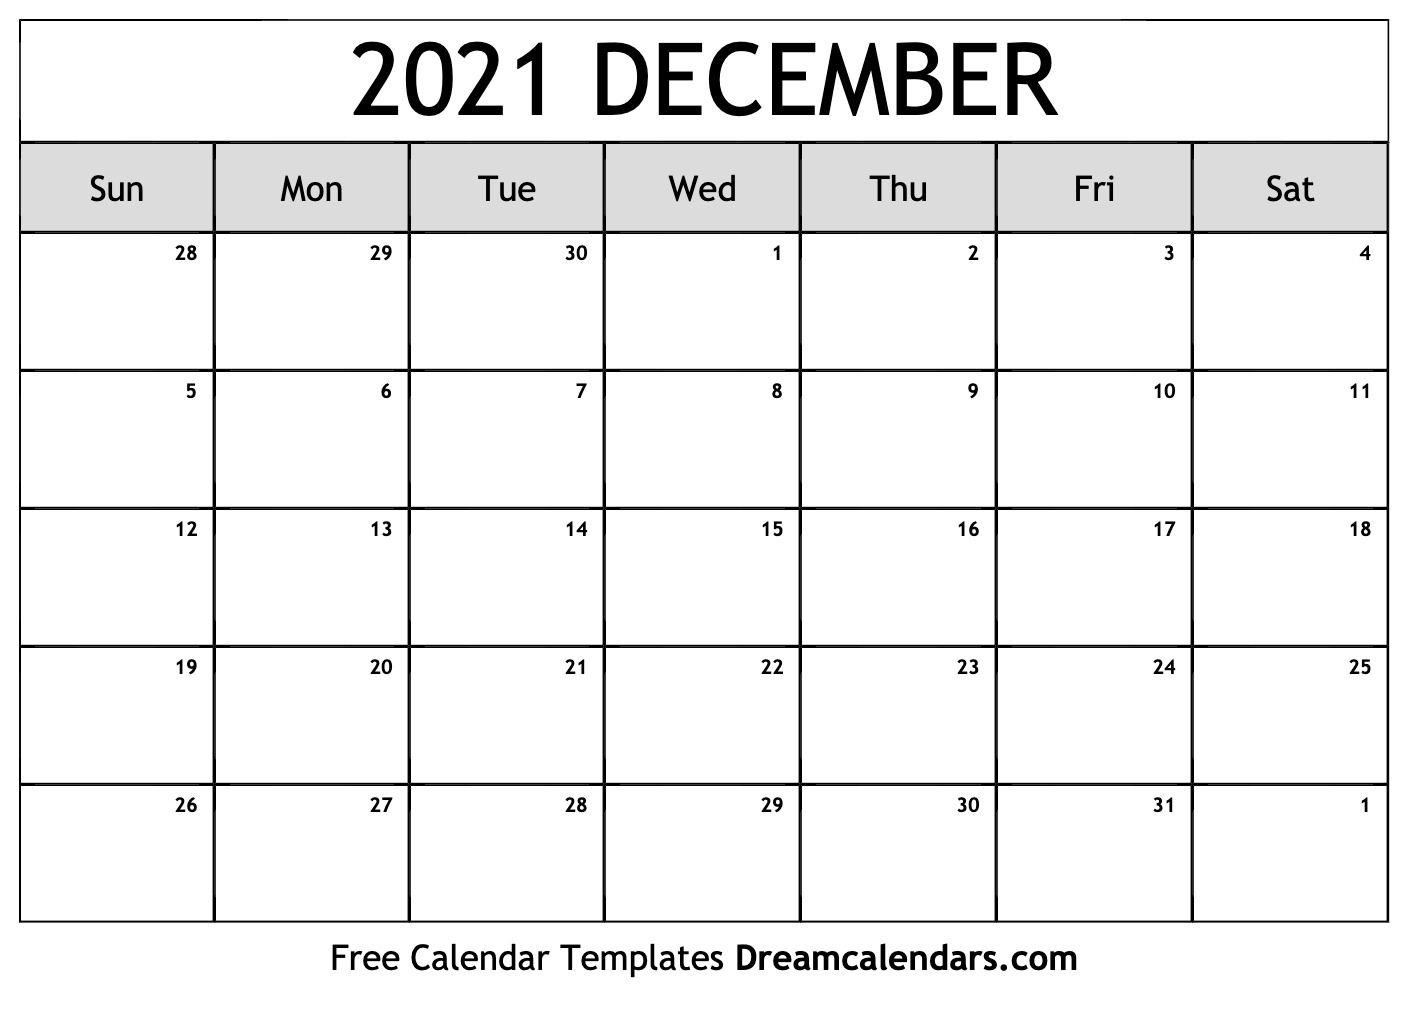 Catch December Christmas 2021 Calendar Template